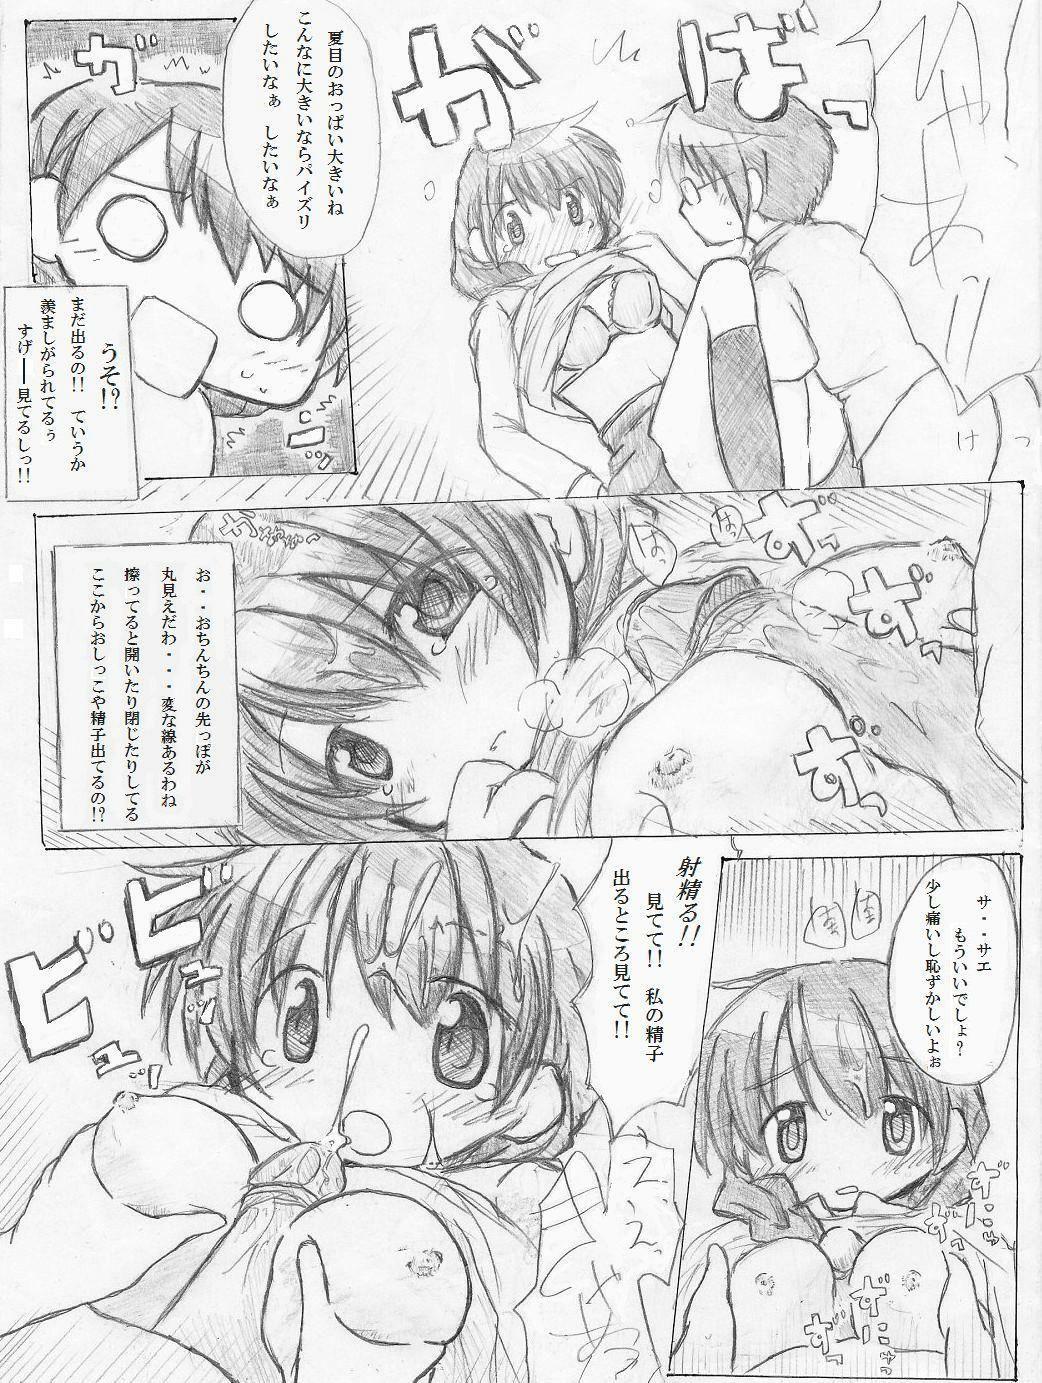 [TOWA] カエル×買える×帰る! ③ page 15 full